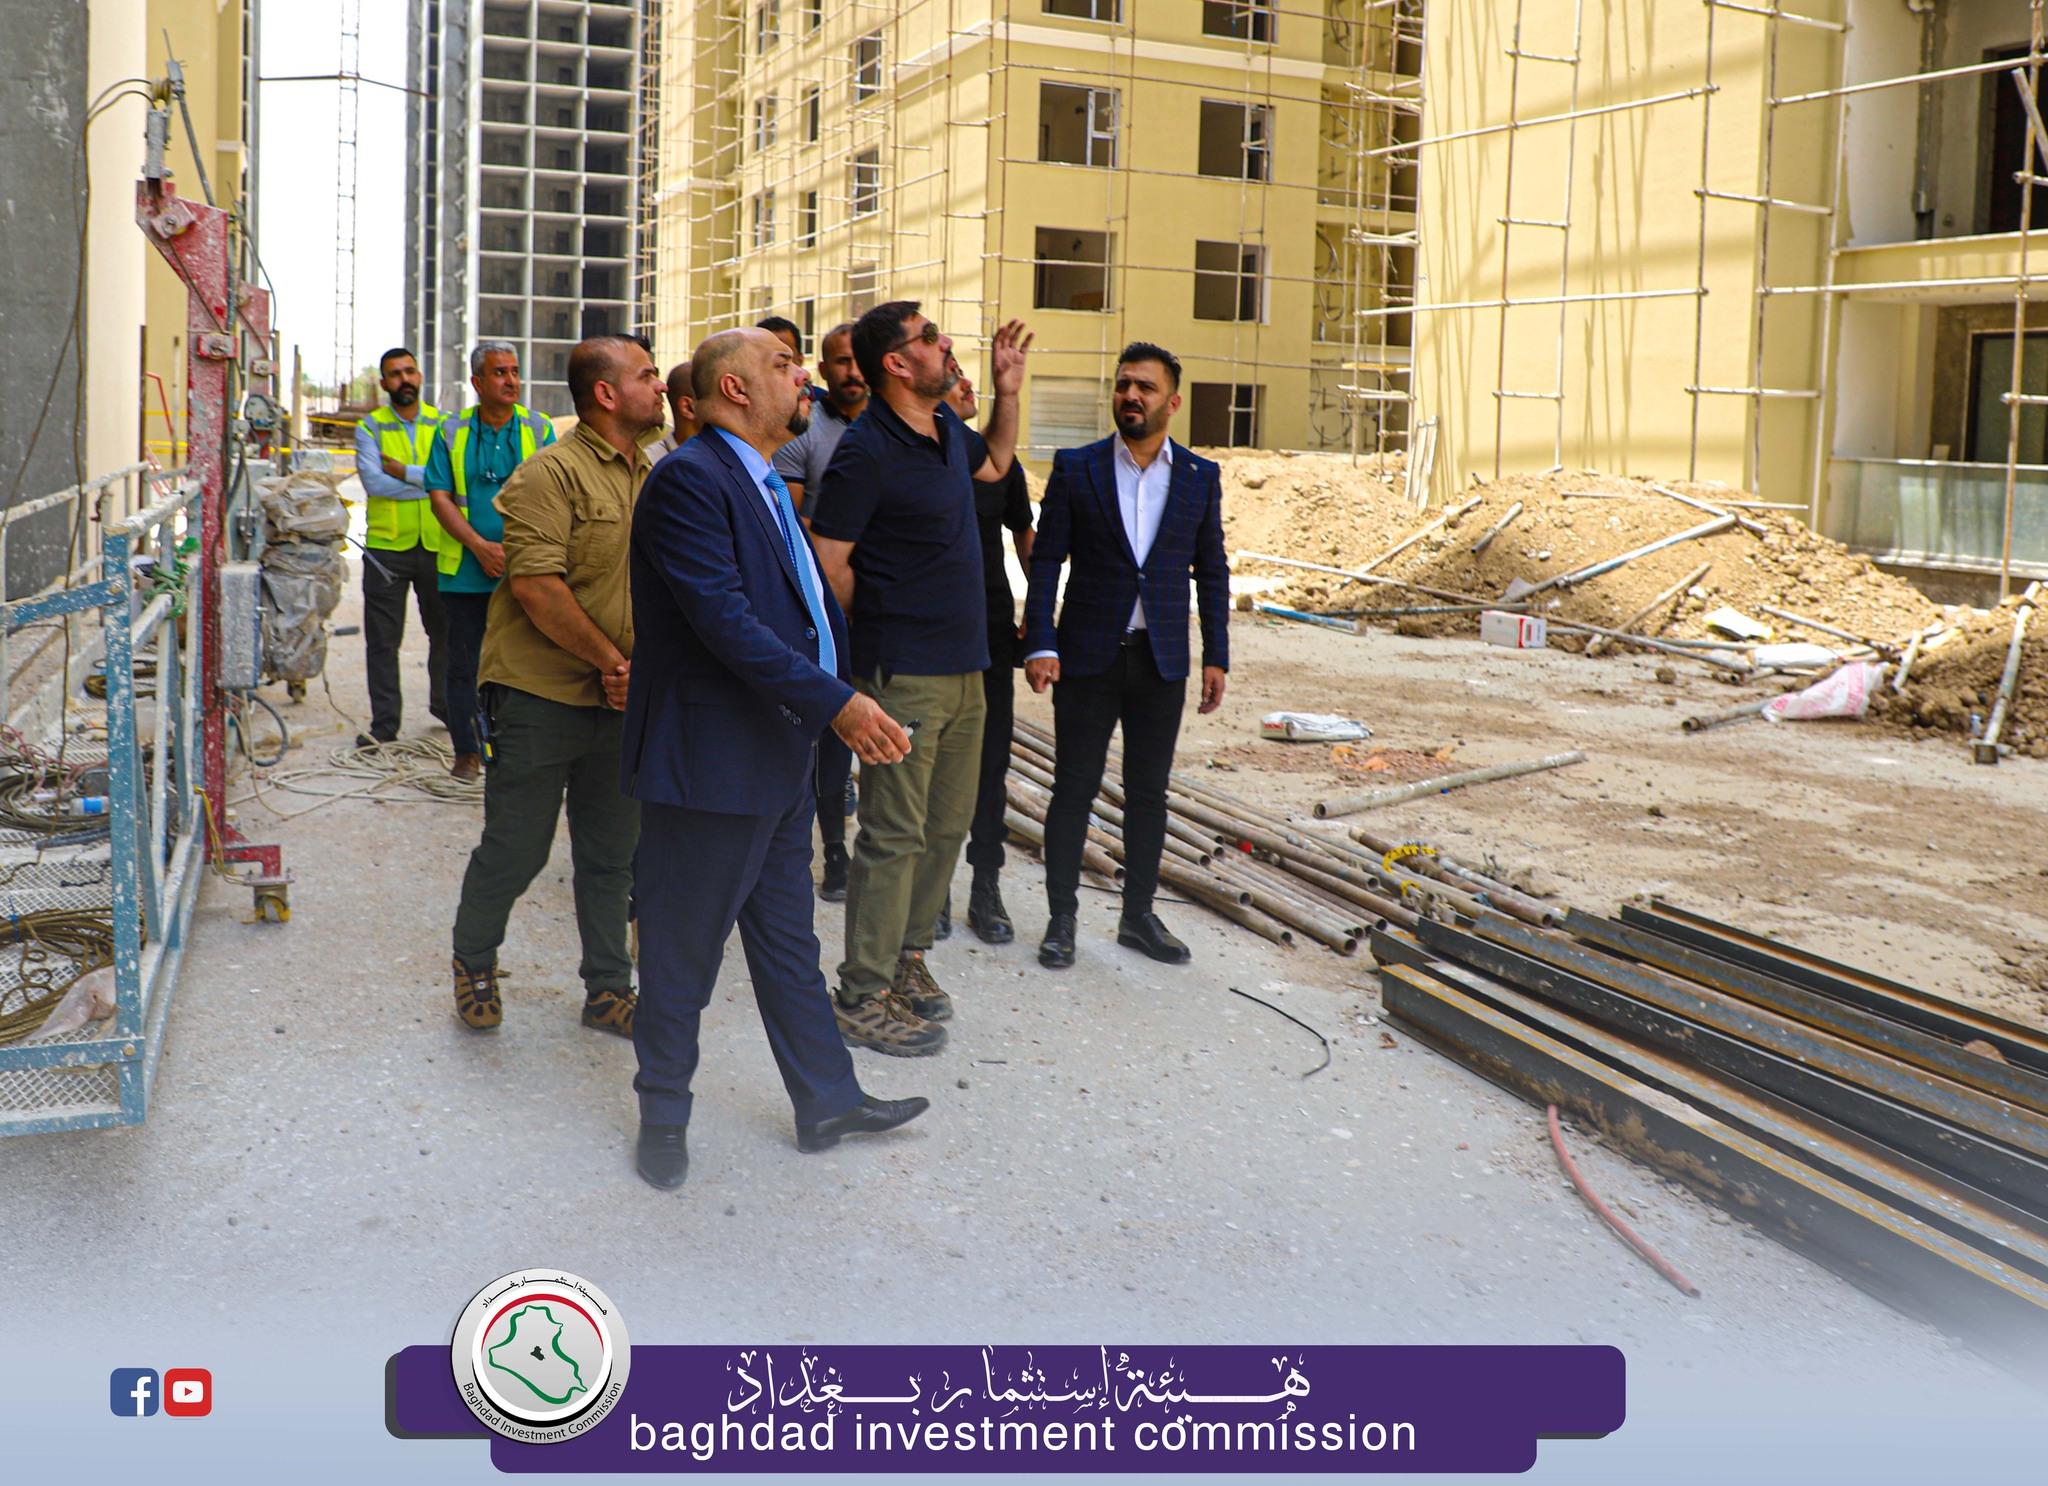 إستثمار بغداد :  المهندس الحسن جميل يؤكد بأن الإستثمار بوابة العراق نحو التطوير والنه